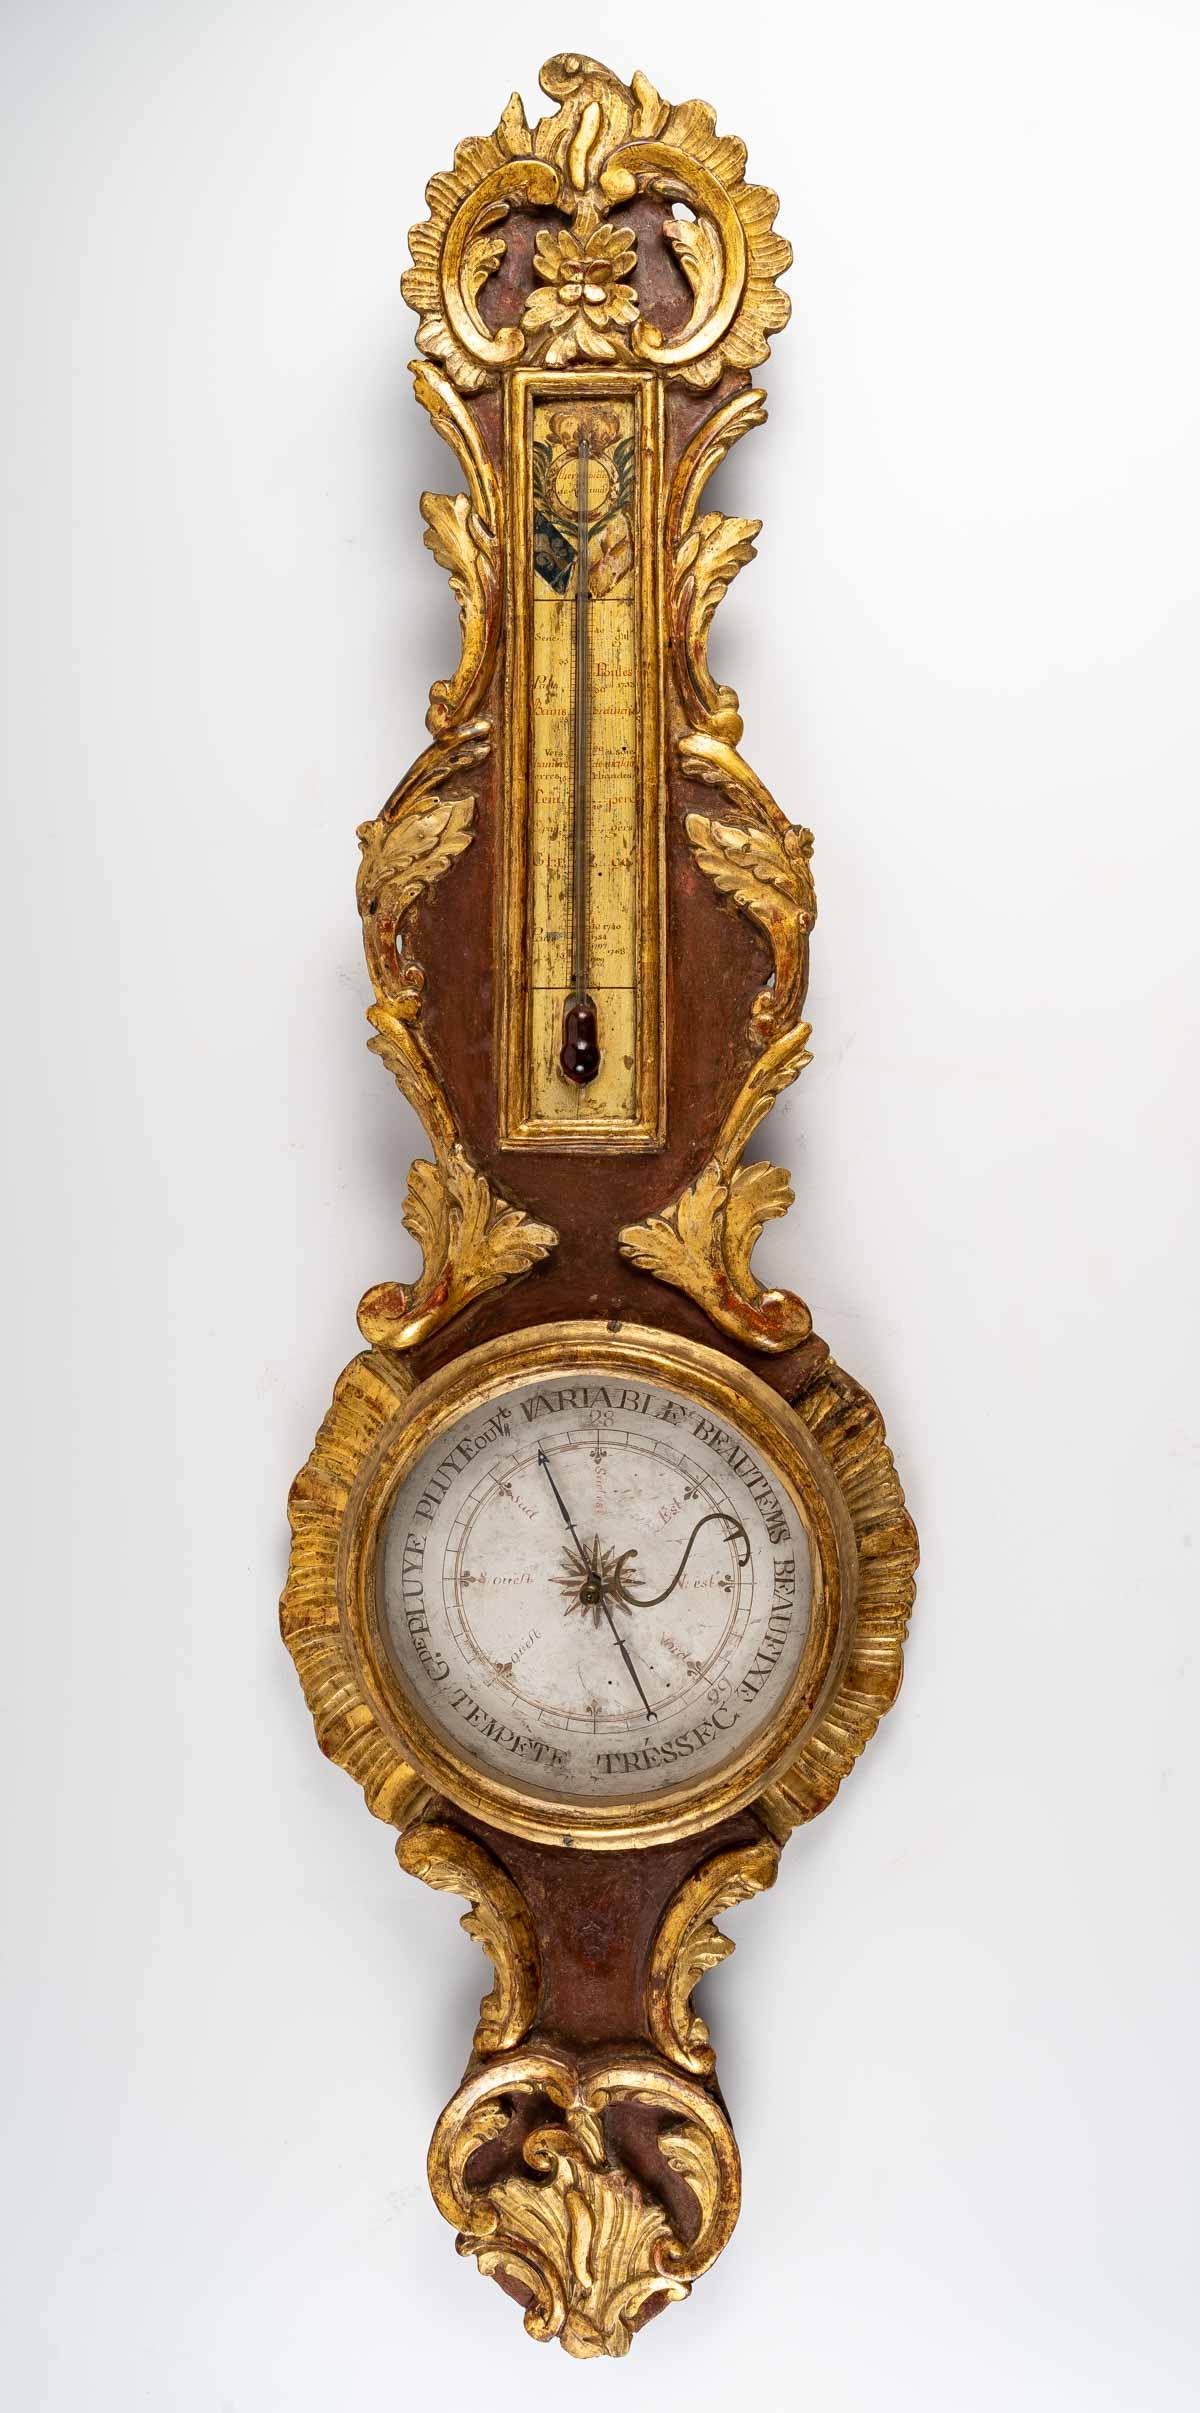 Le Marché Biron - Baromètre - thermomètre d'époque Louis XV (1724 - 1774).